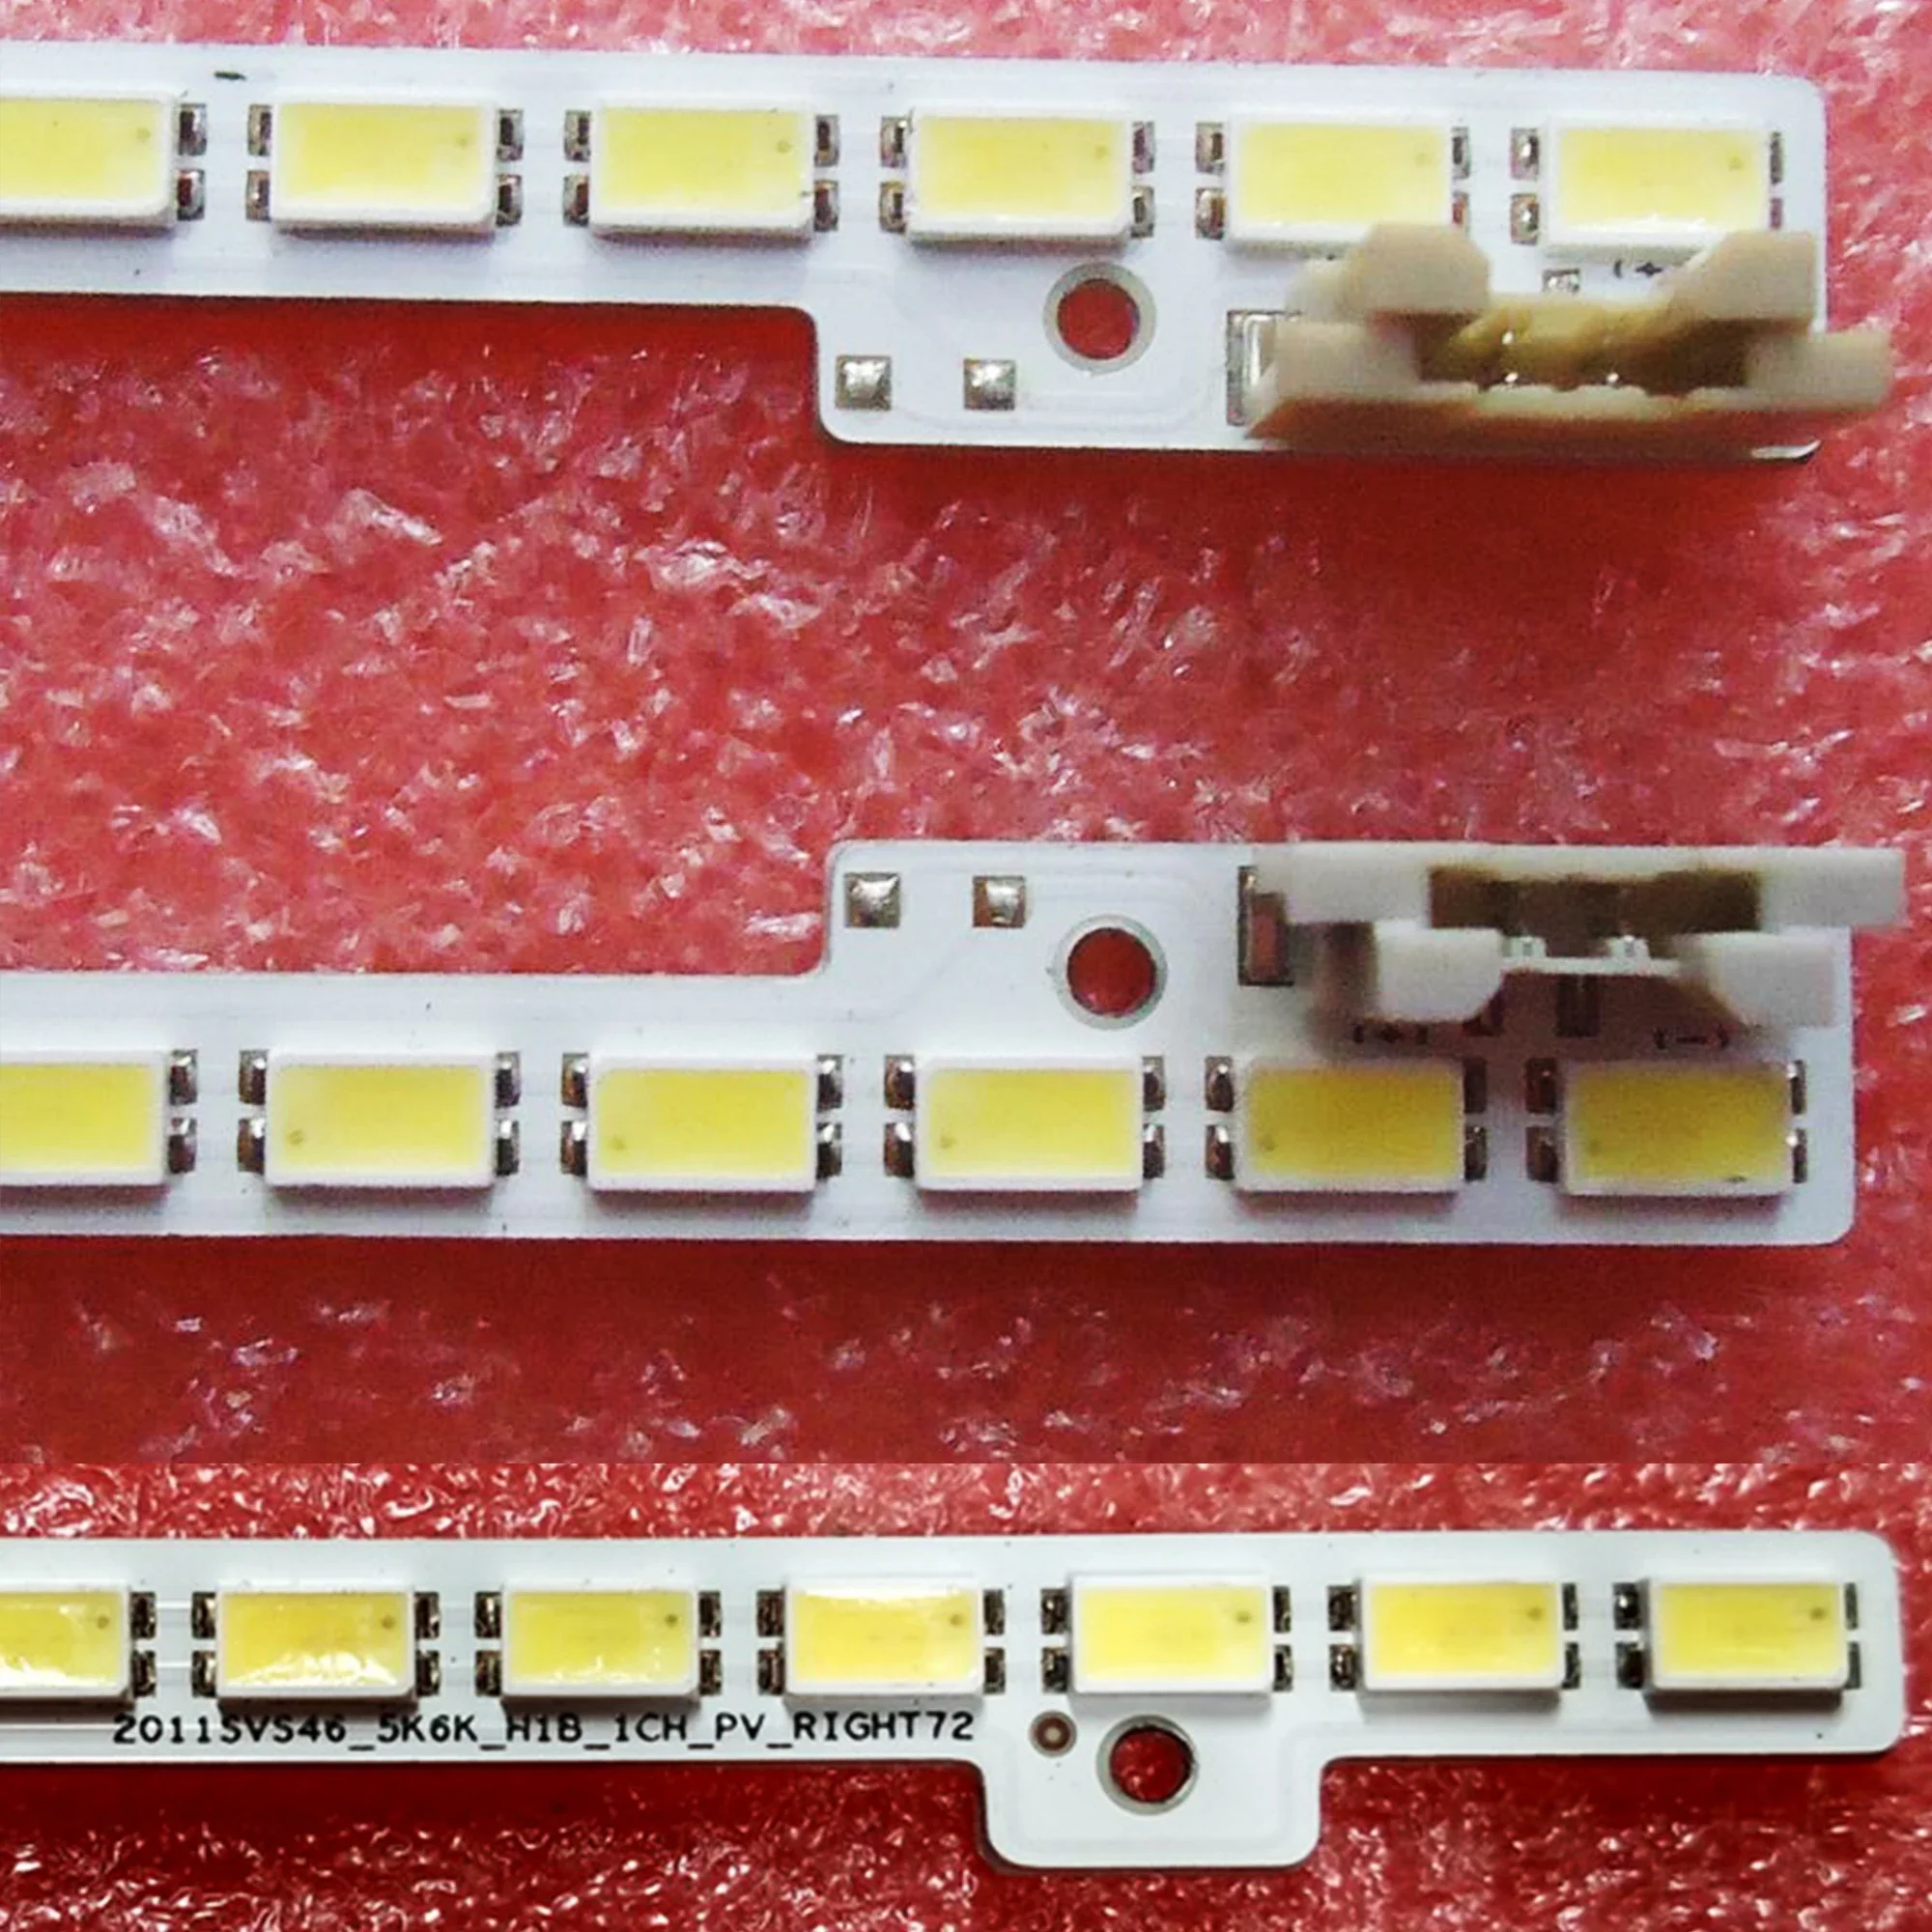 LED Backligh strip 72led For Sam sung 46" UA46D5000PR 2011SVS46 5K6K H1B-1CH BN64-01644A LTJ460HN01-H JVG4-460SMA-R1 UE46D5000